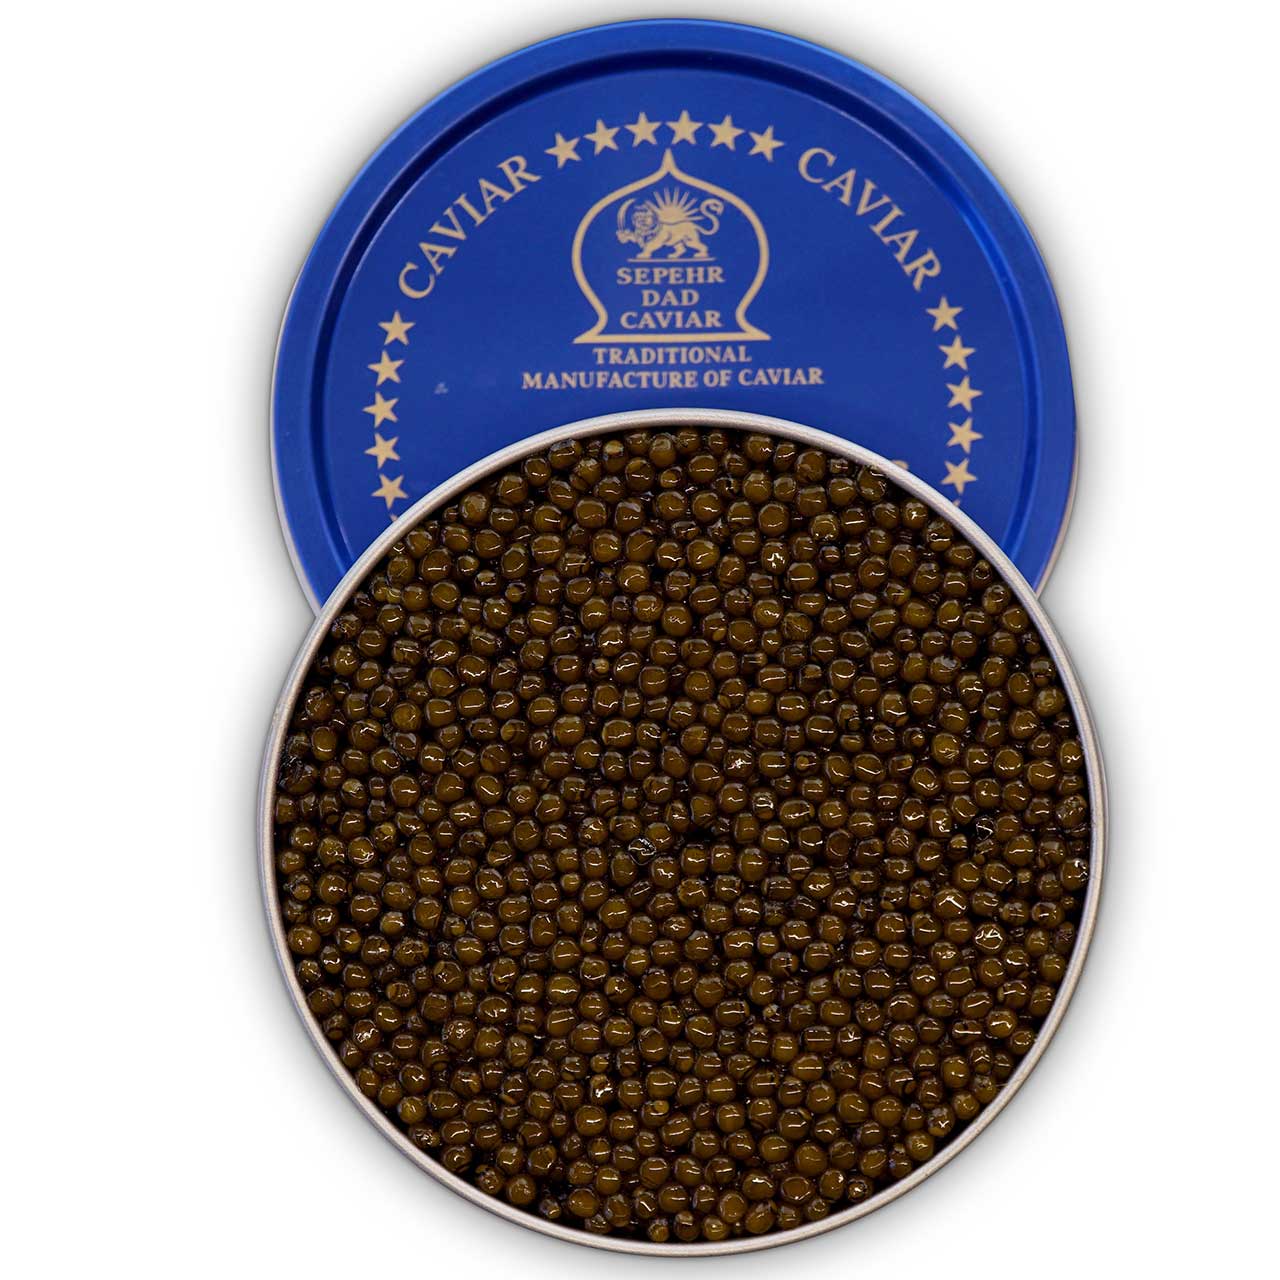 Probierset Beluga Style Kaviar 3 x 20g